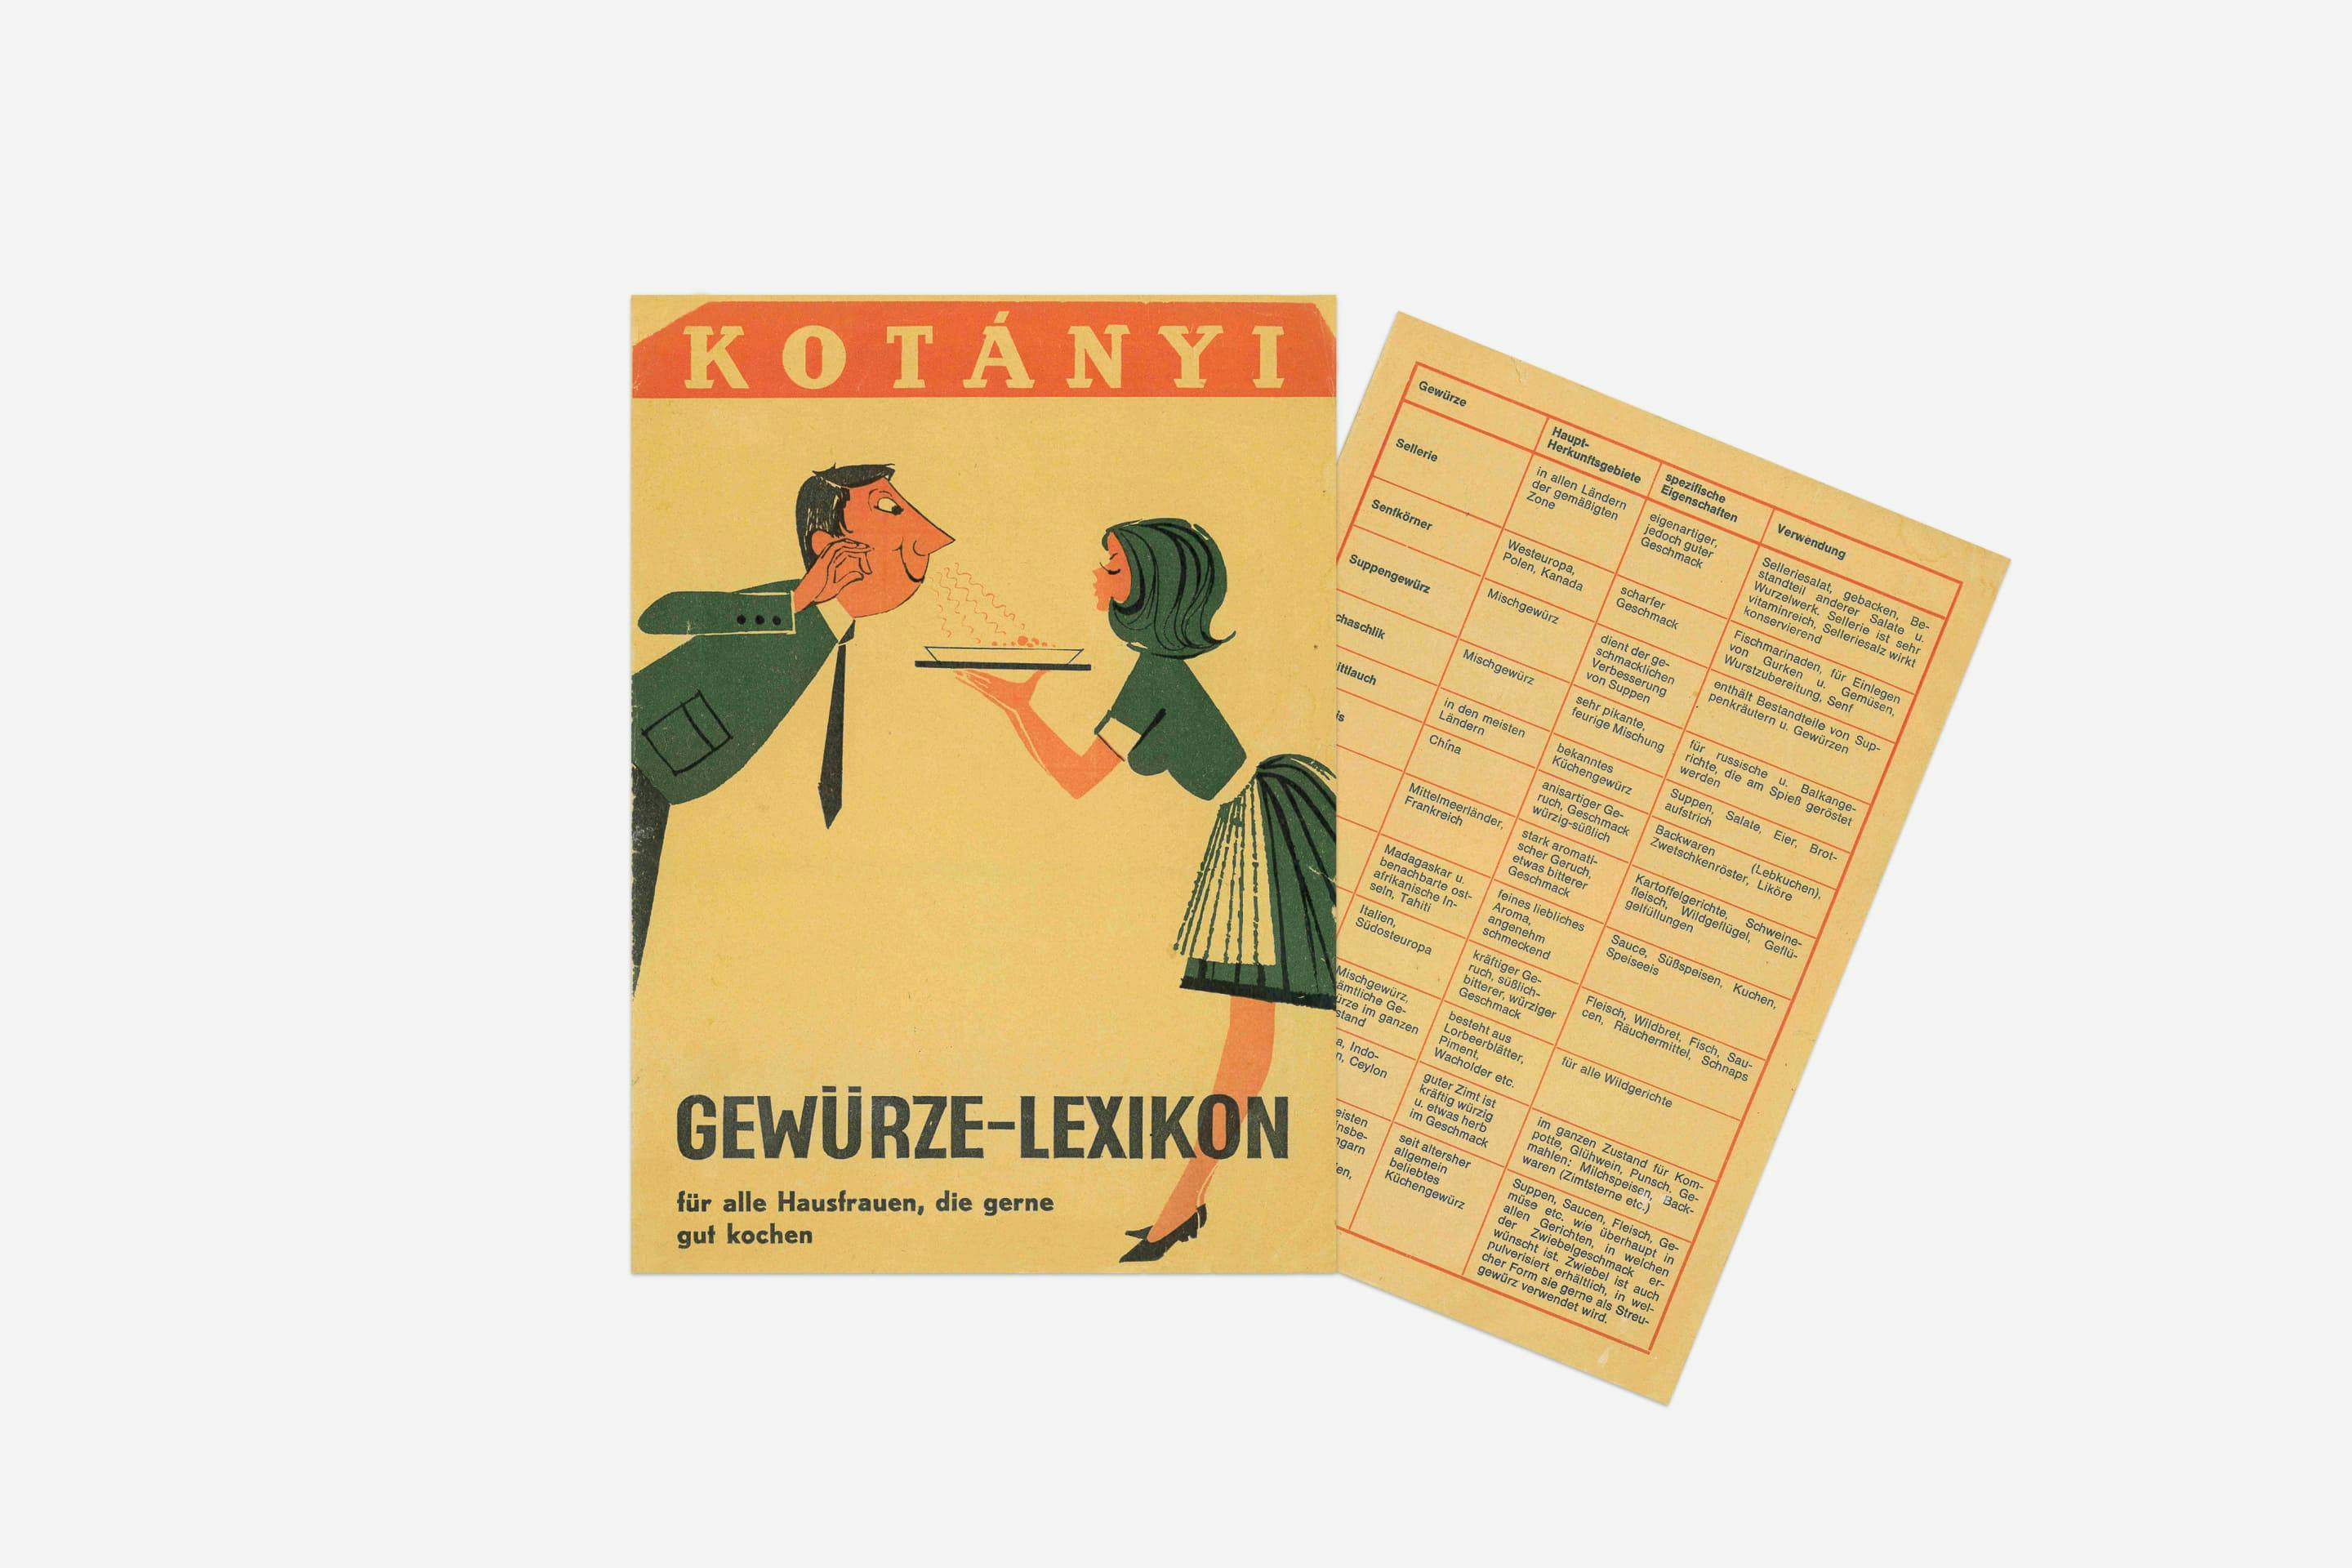 Kotányi spice glossary from 1970.